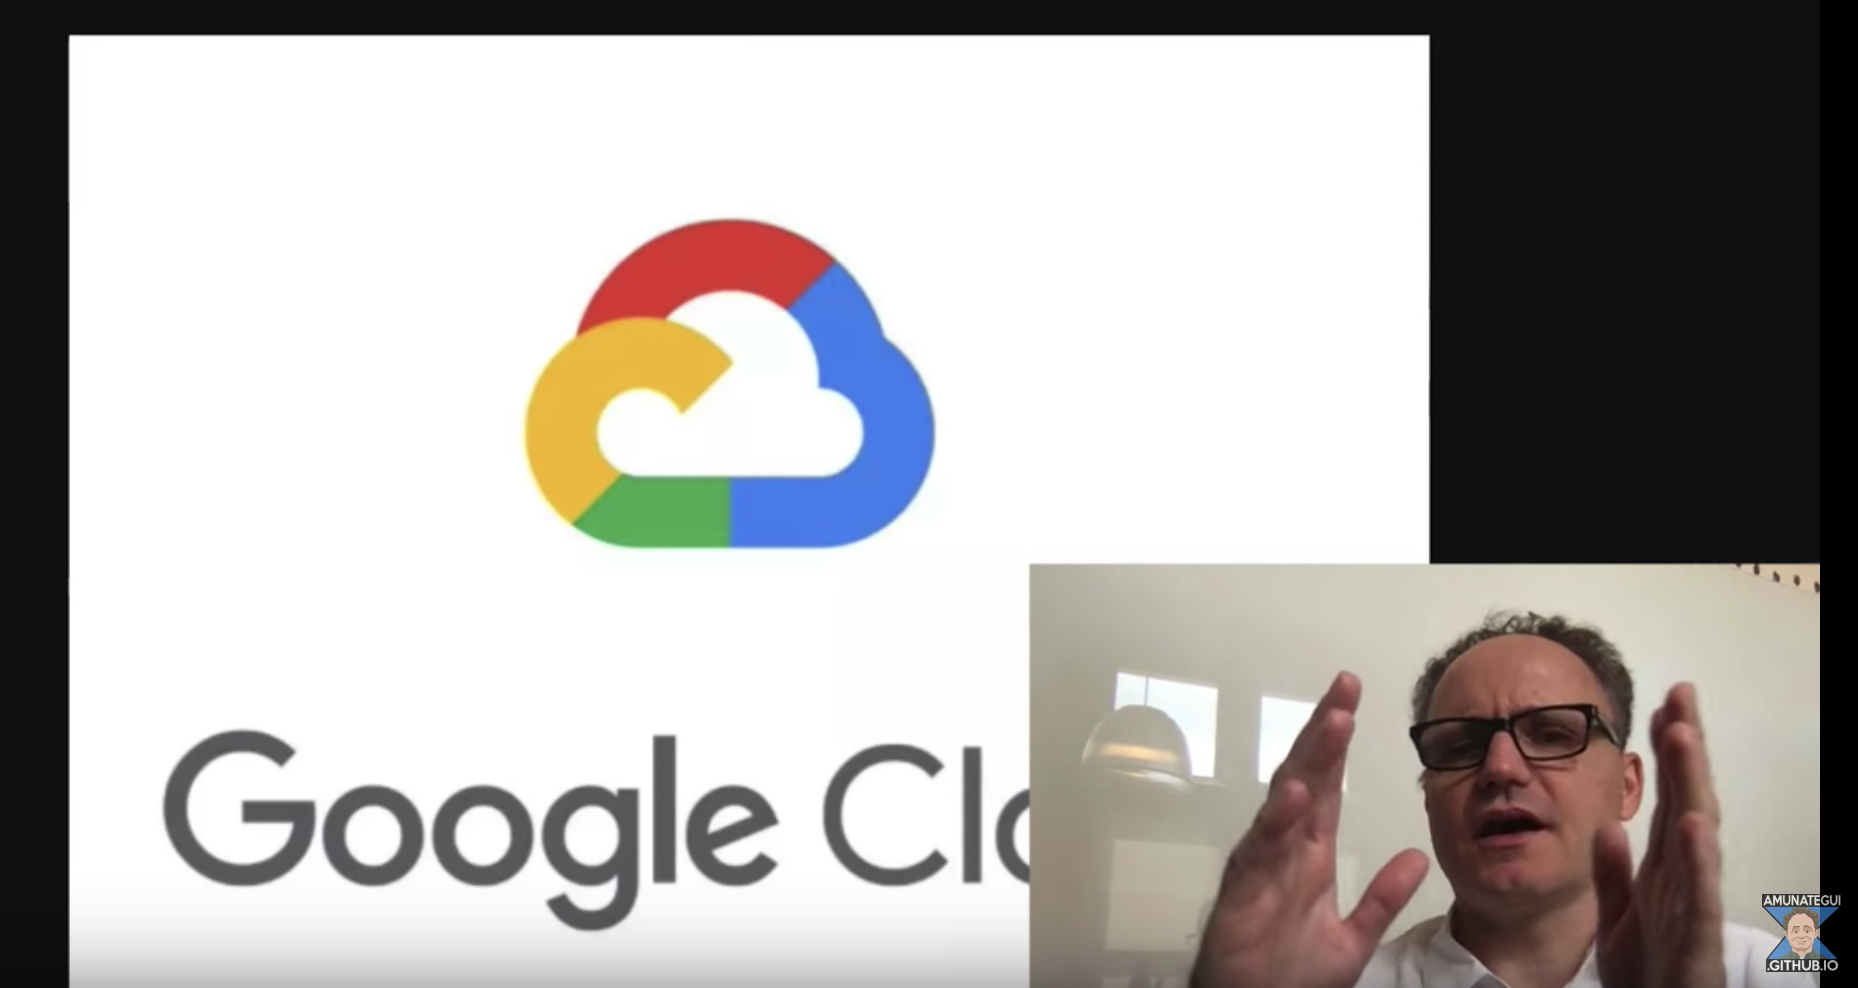 GPUs in Google Cloud